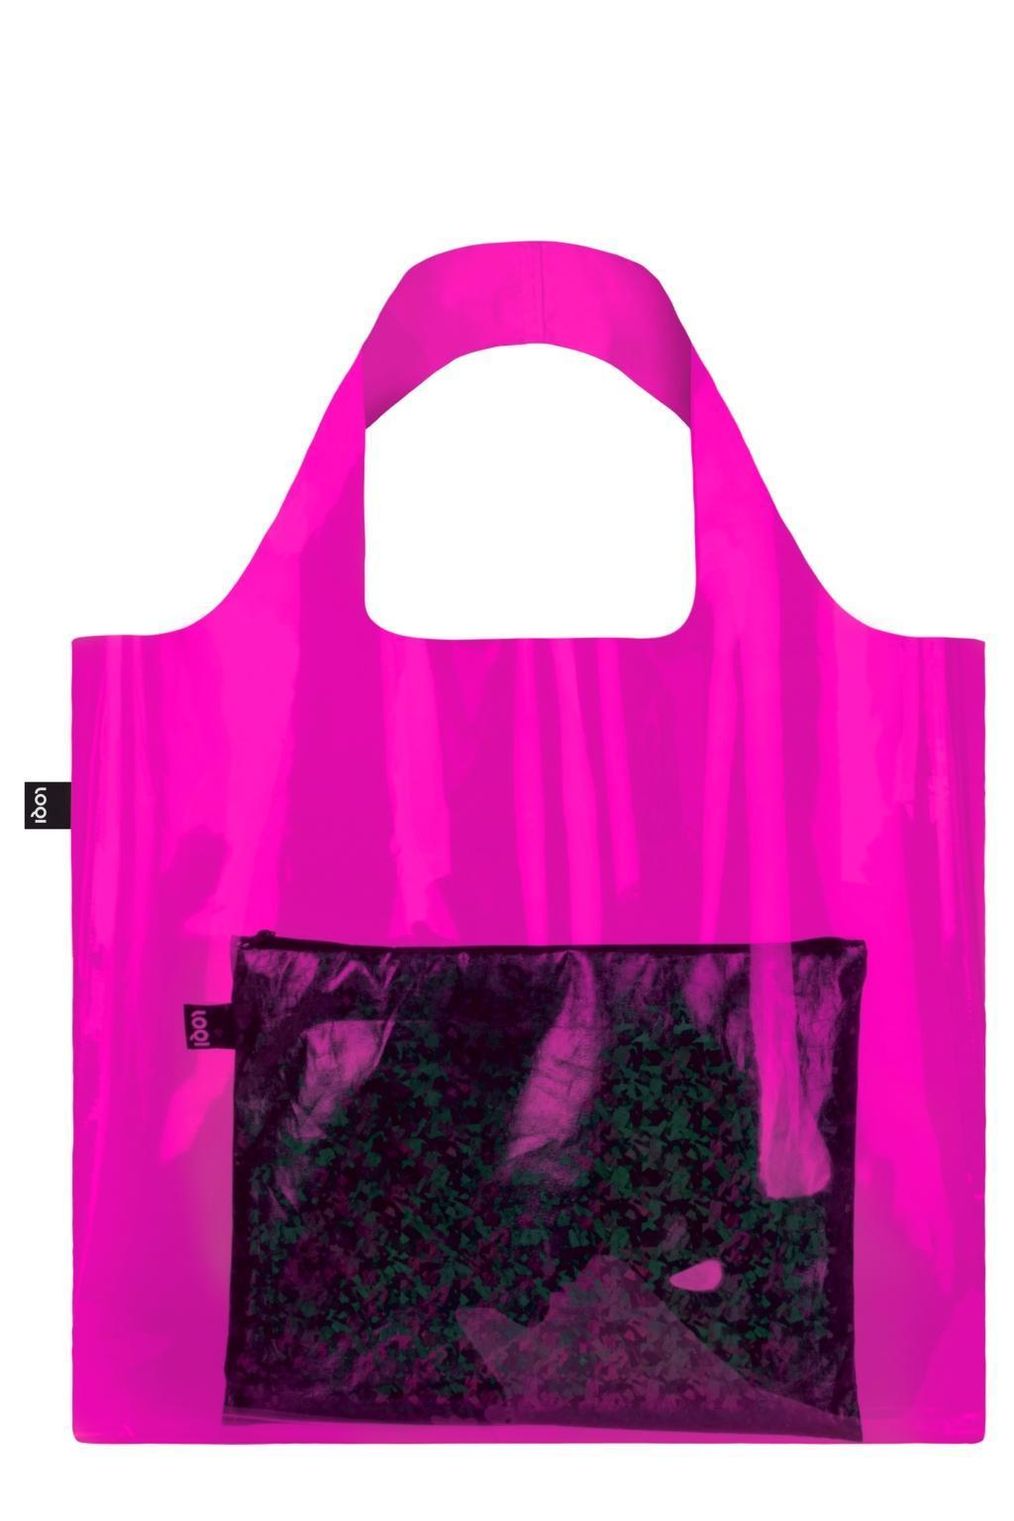 LOQI TRANSPARENT Pink Bag jetzt bei Weltbild.de bestellen